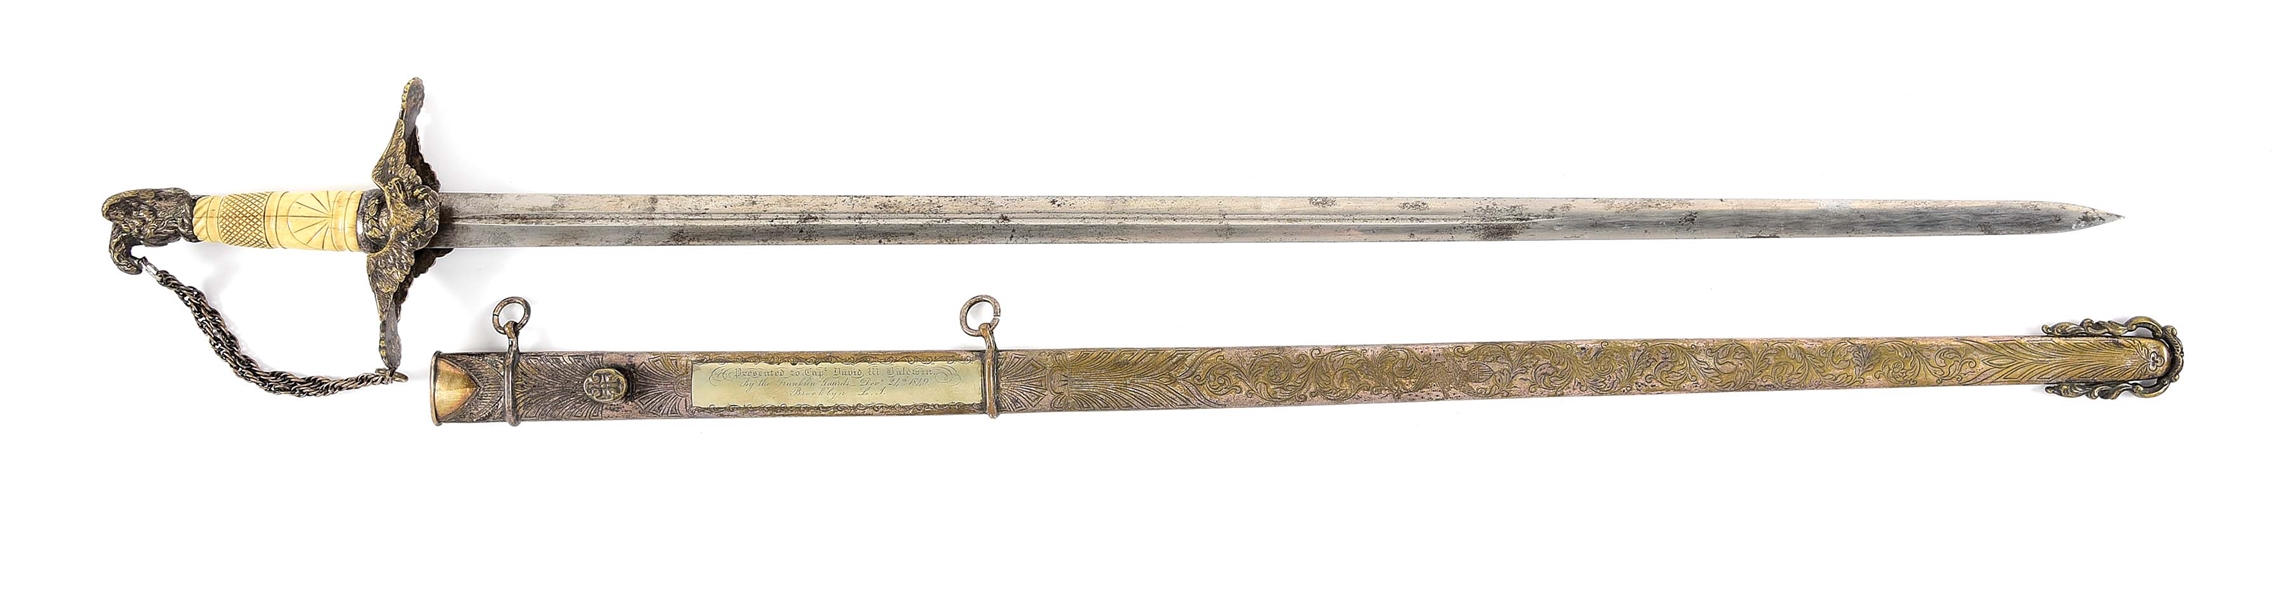 FINE 1840S PRESENTATION SWORD ENSCRIBED TO CAPTAIN DAVID W. BALDWIN, FRANKLIN GUARDS.